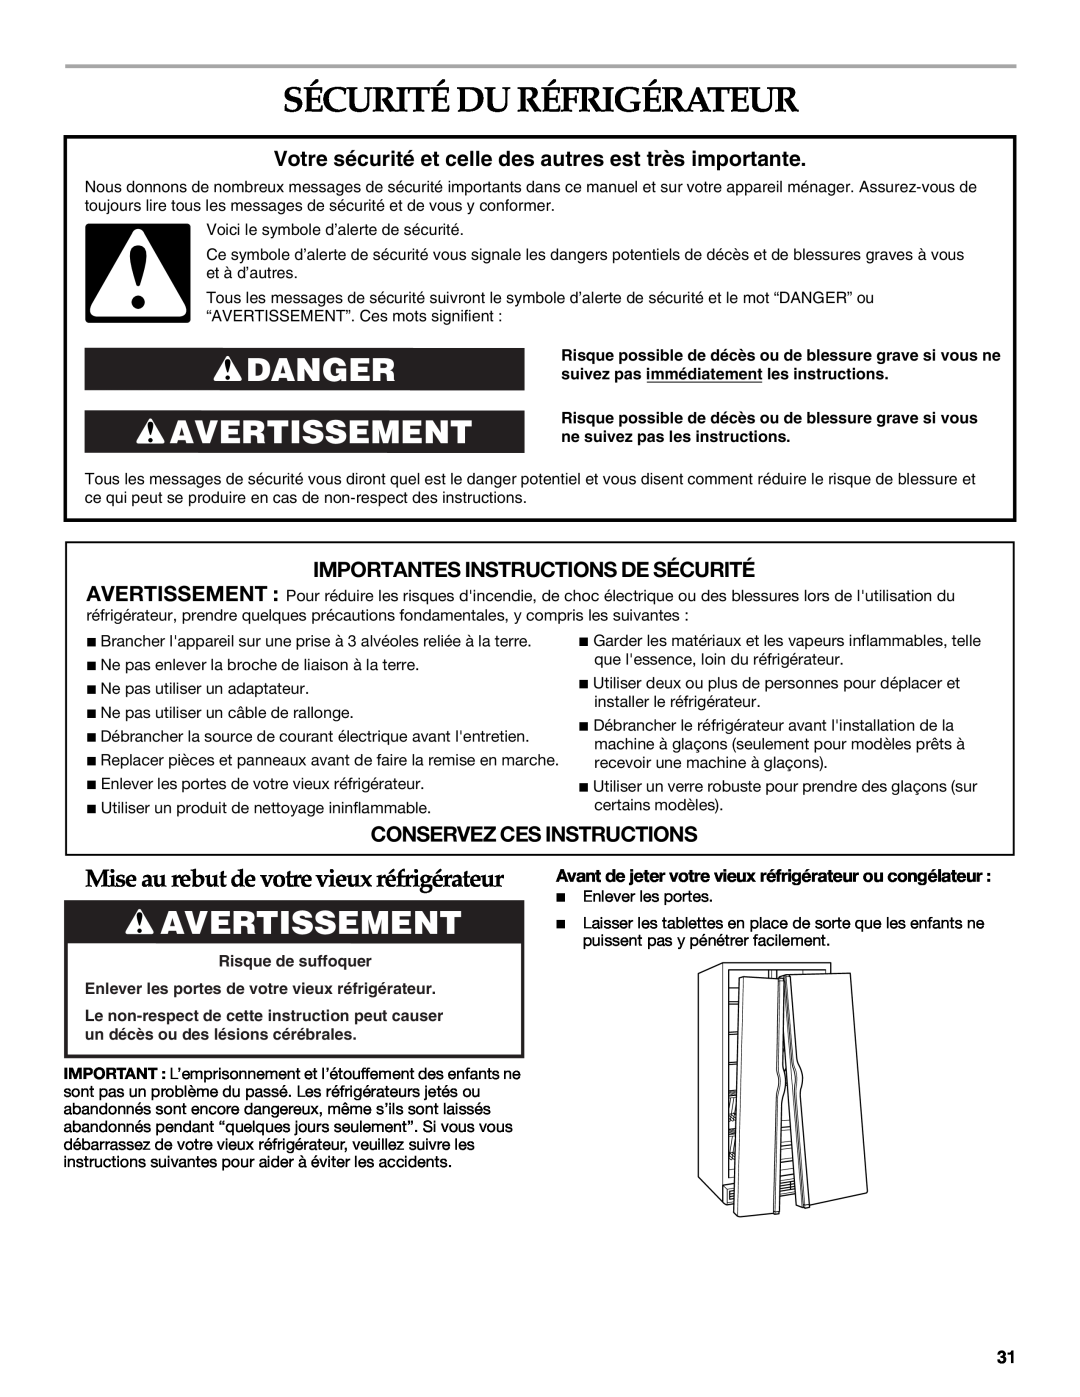 KitchenAid 2318581 manual Sécurité Du Réfrigérateur, Danger Avertissement, Mise au rebut de votre vieux réfrigérateur 